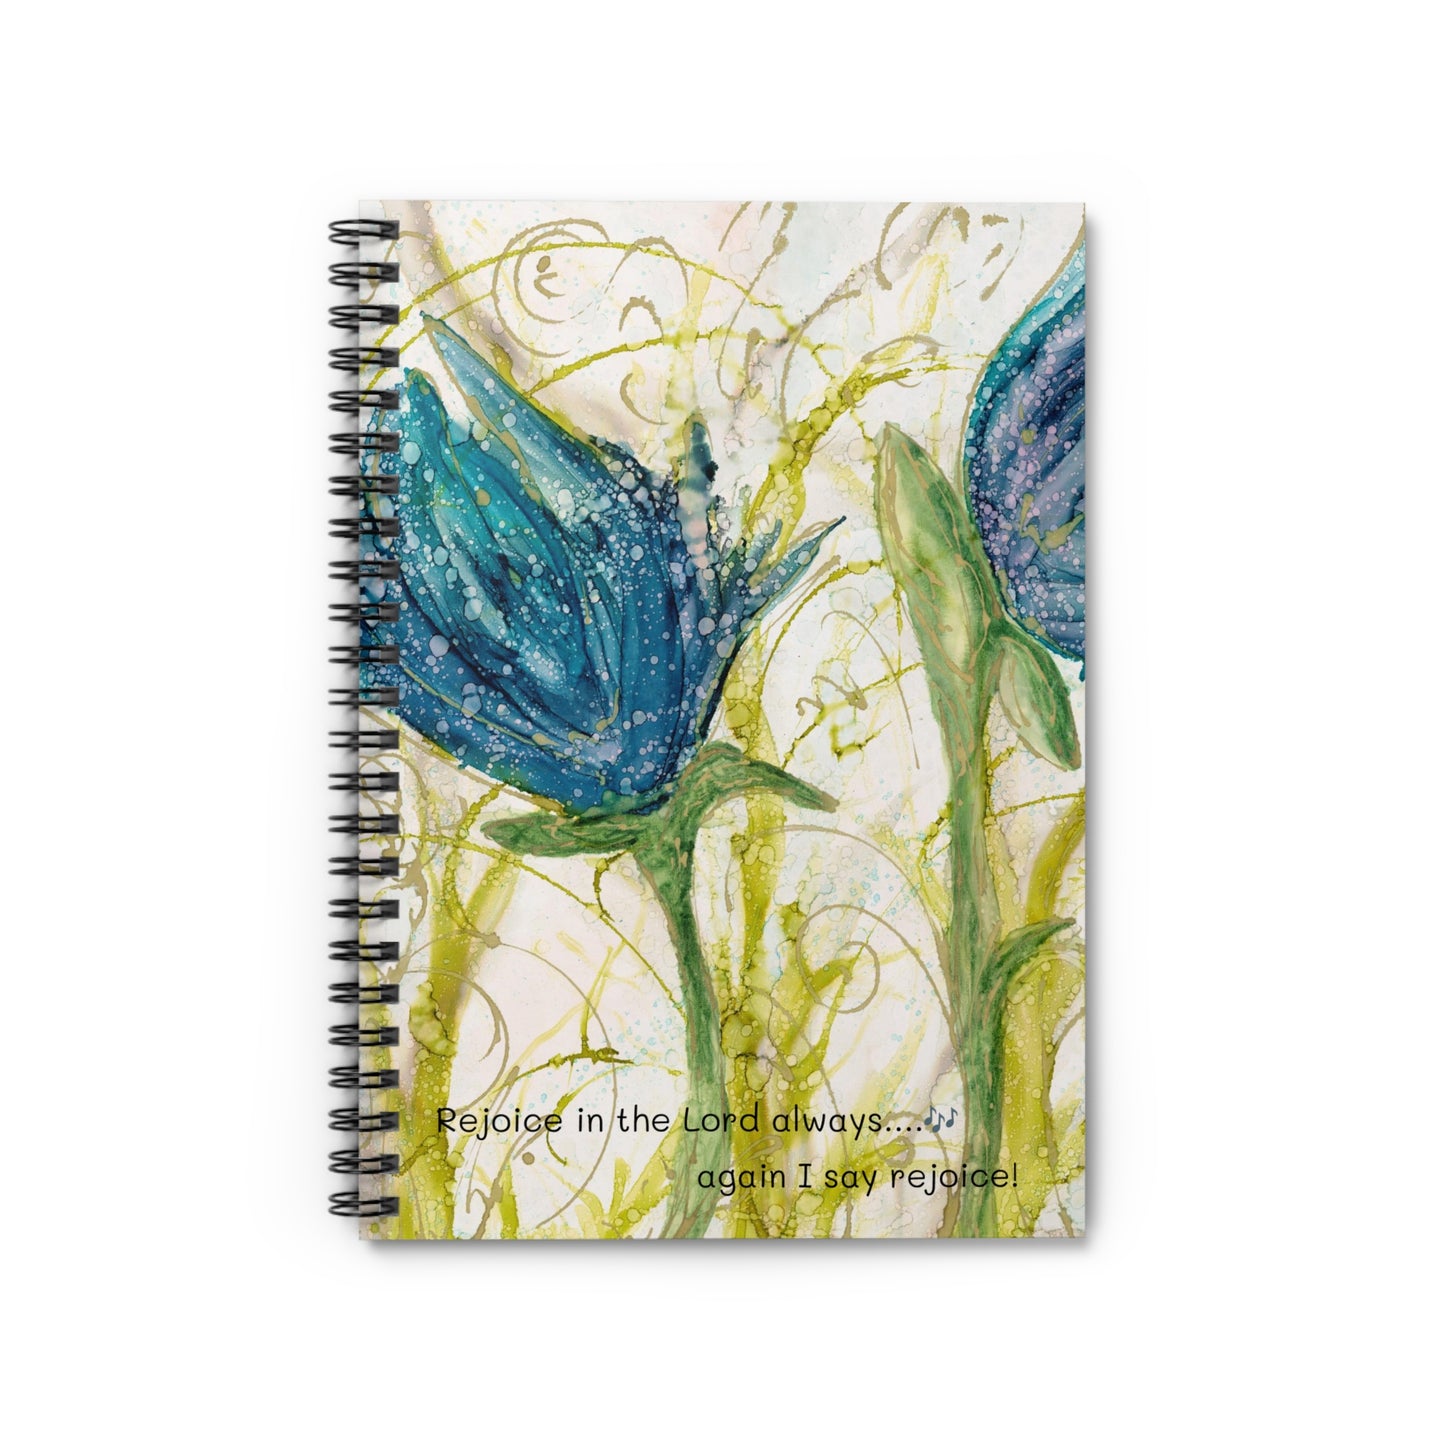 Rejoice Spiral Notebook - Ruled Line